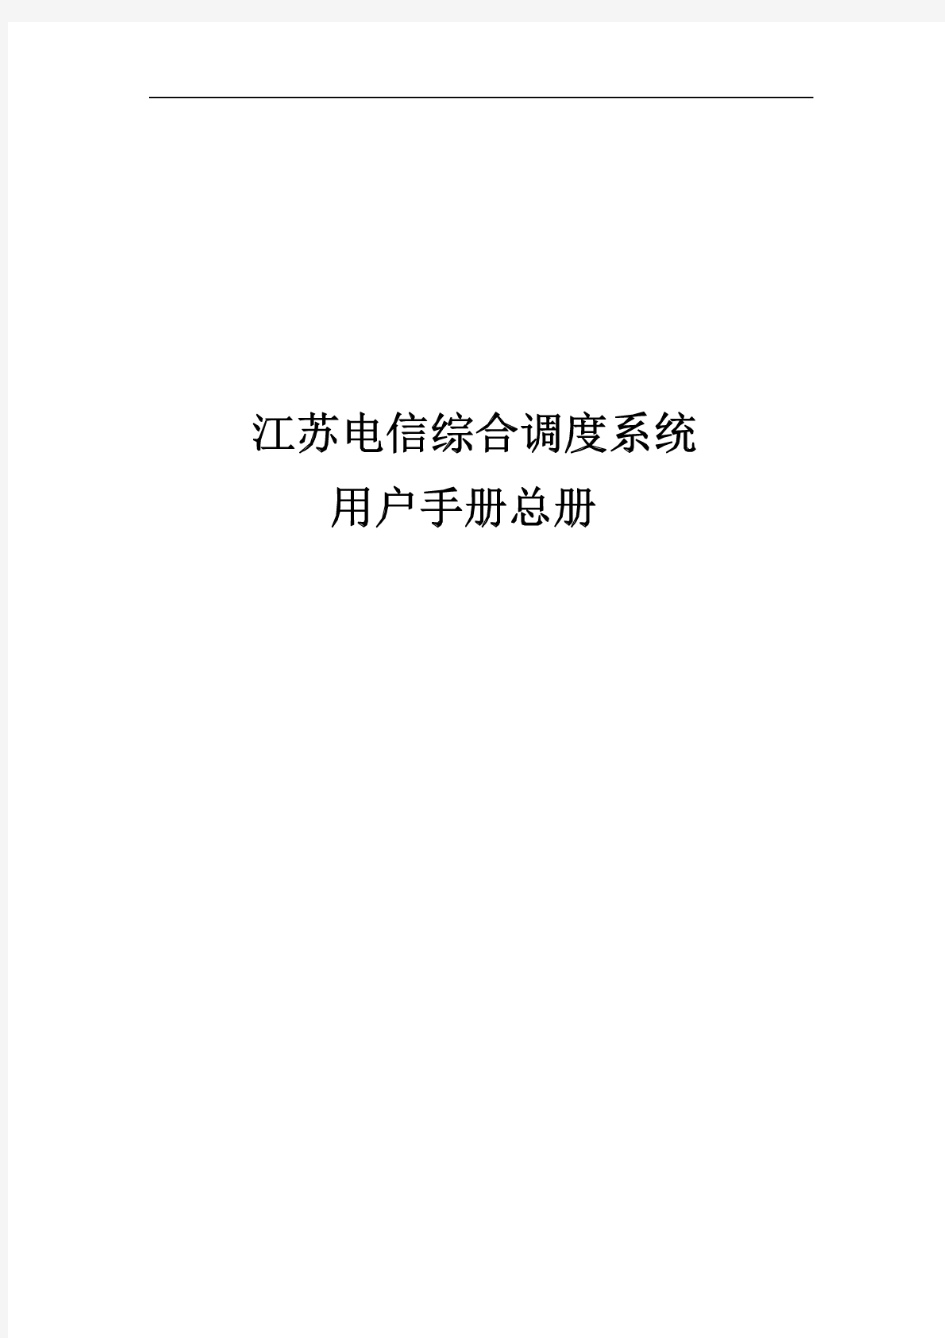 江苏电信综合调度系统-用户手册-总册